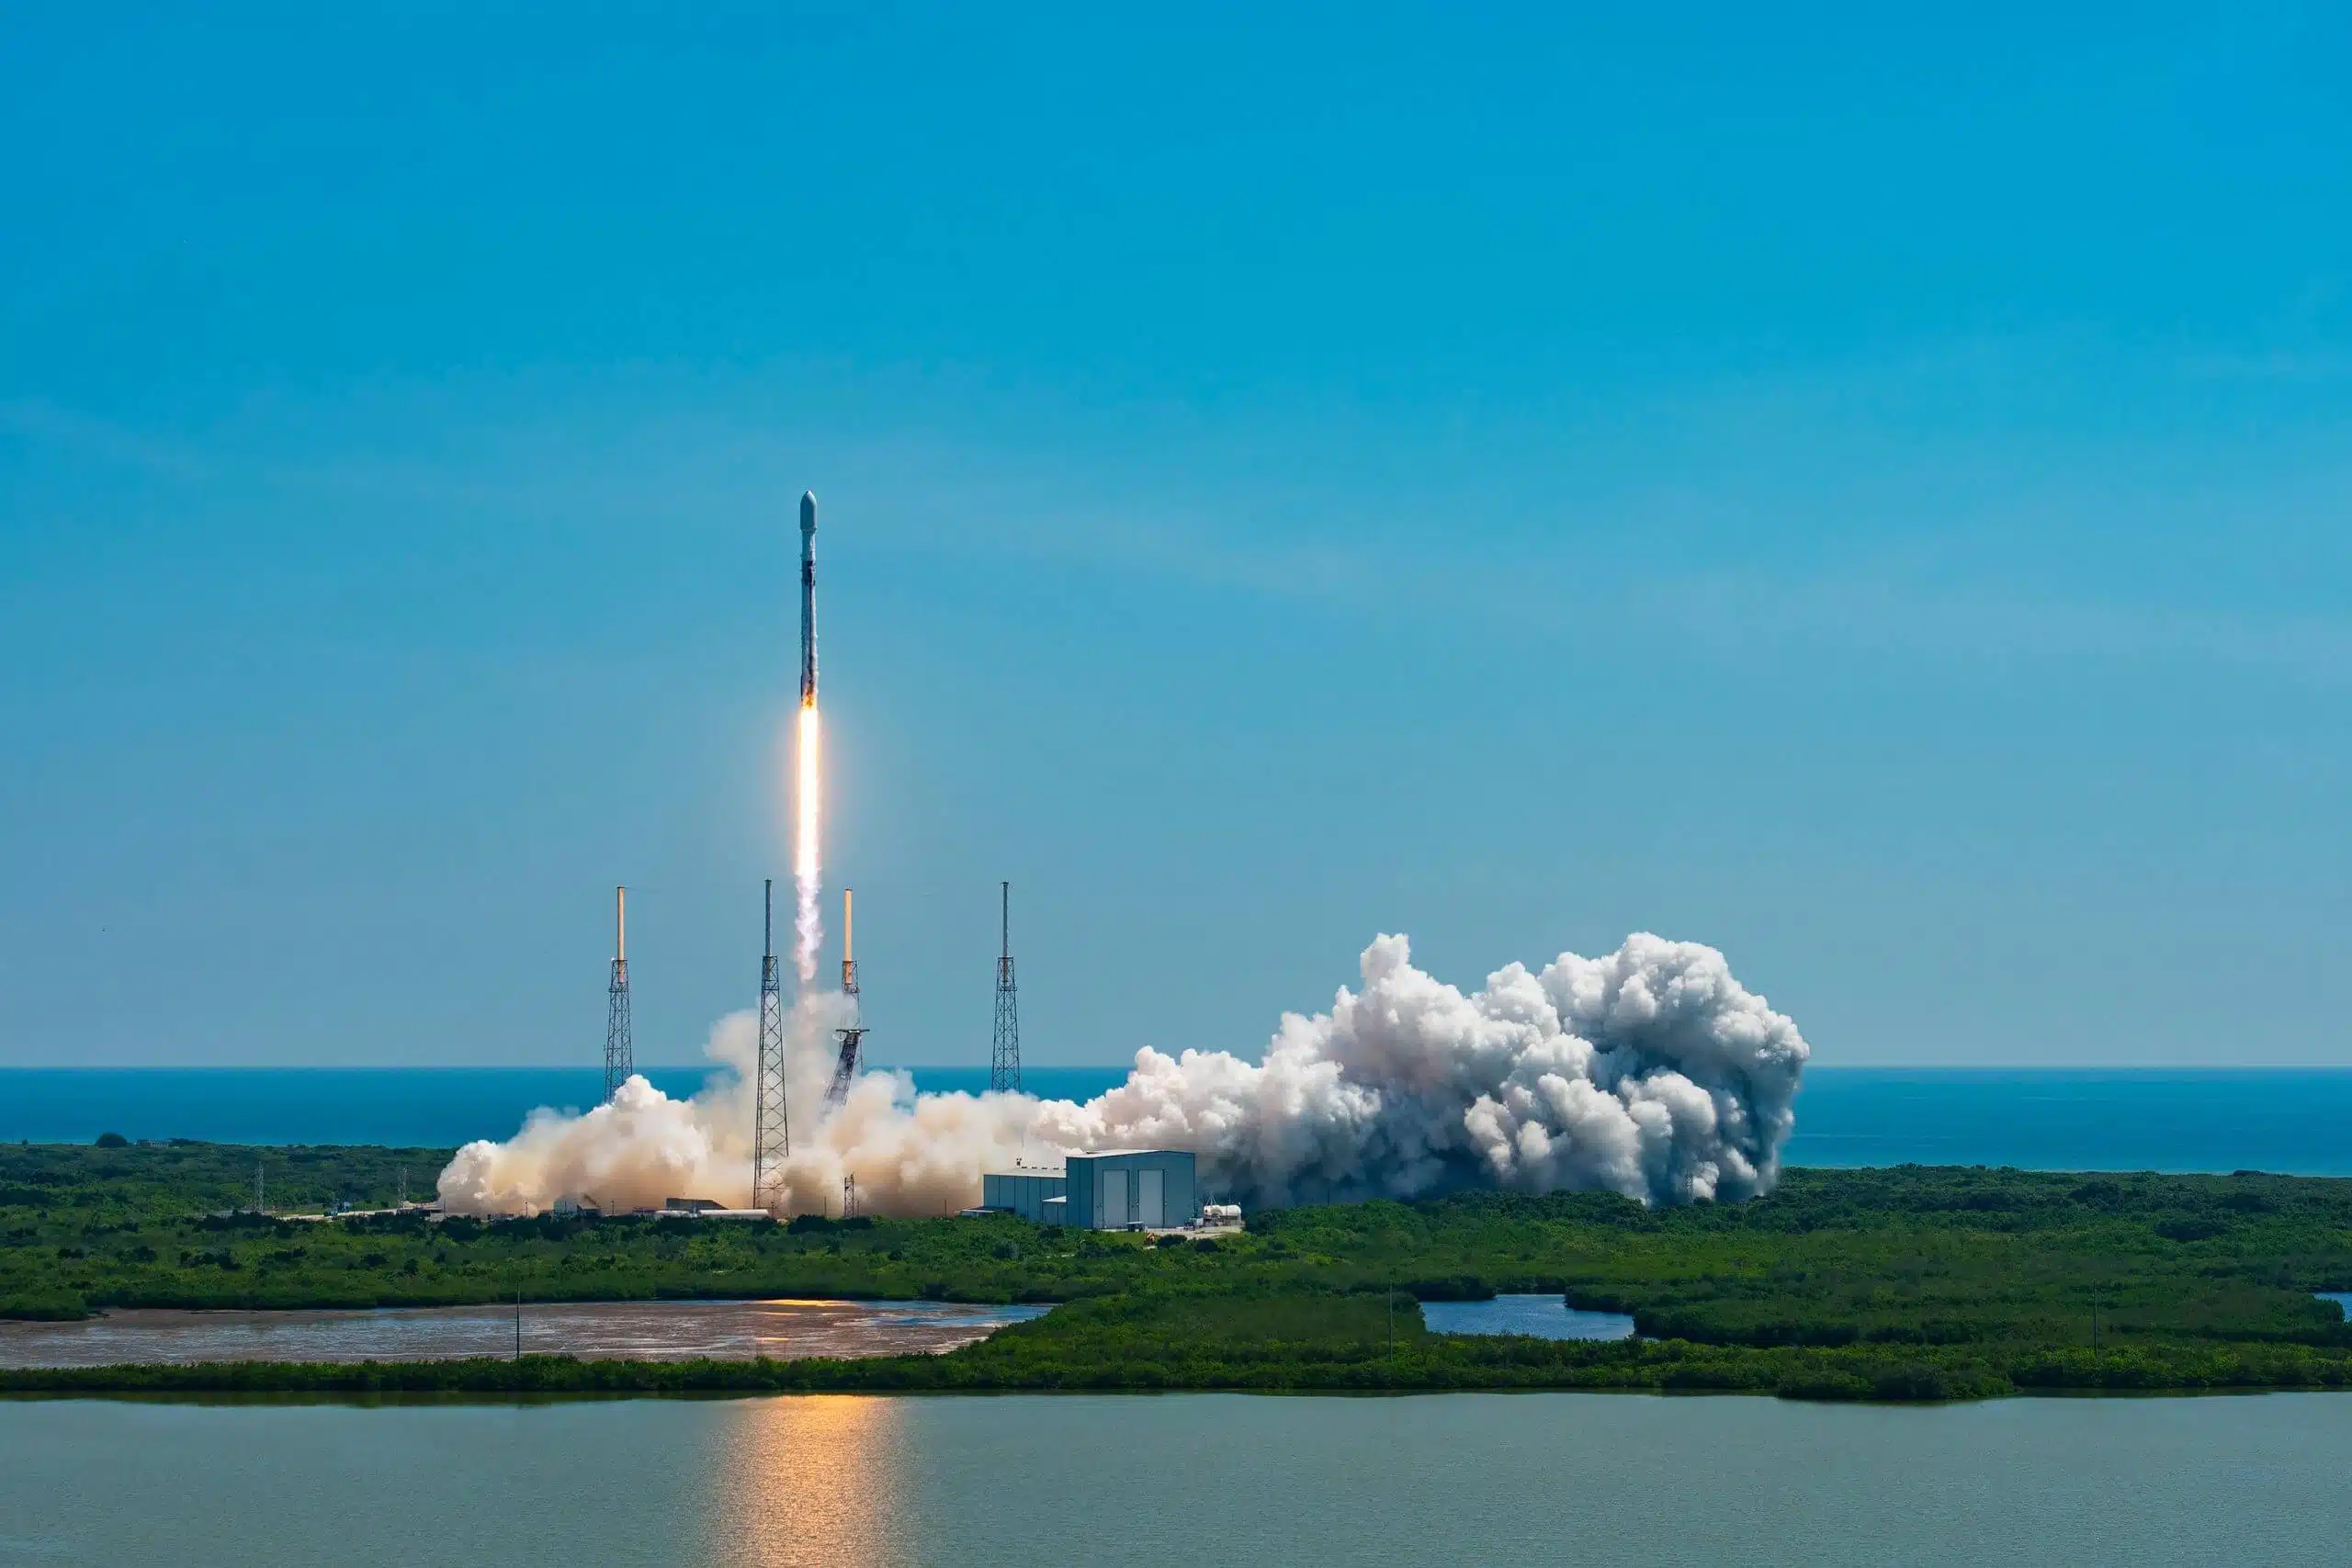 ב-1 ביולי 2023 החללית אוקלידס שוגרה בהצלחה על גבי טיל פלקון 9 של ספייס-X. מטרתה לחקור את המרכיבים המסתוריים של היקום, החומר האפל והאנרגיה האפלה.
קרדיט: Credit: SpaceX
